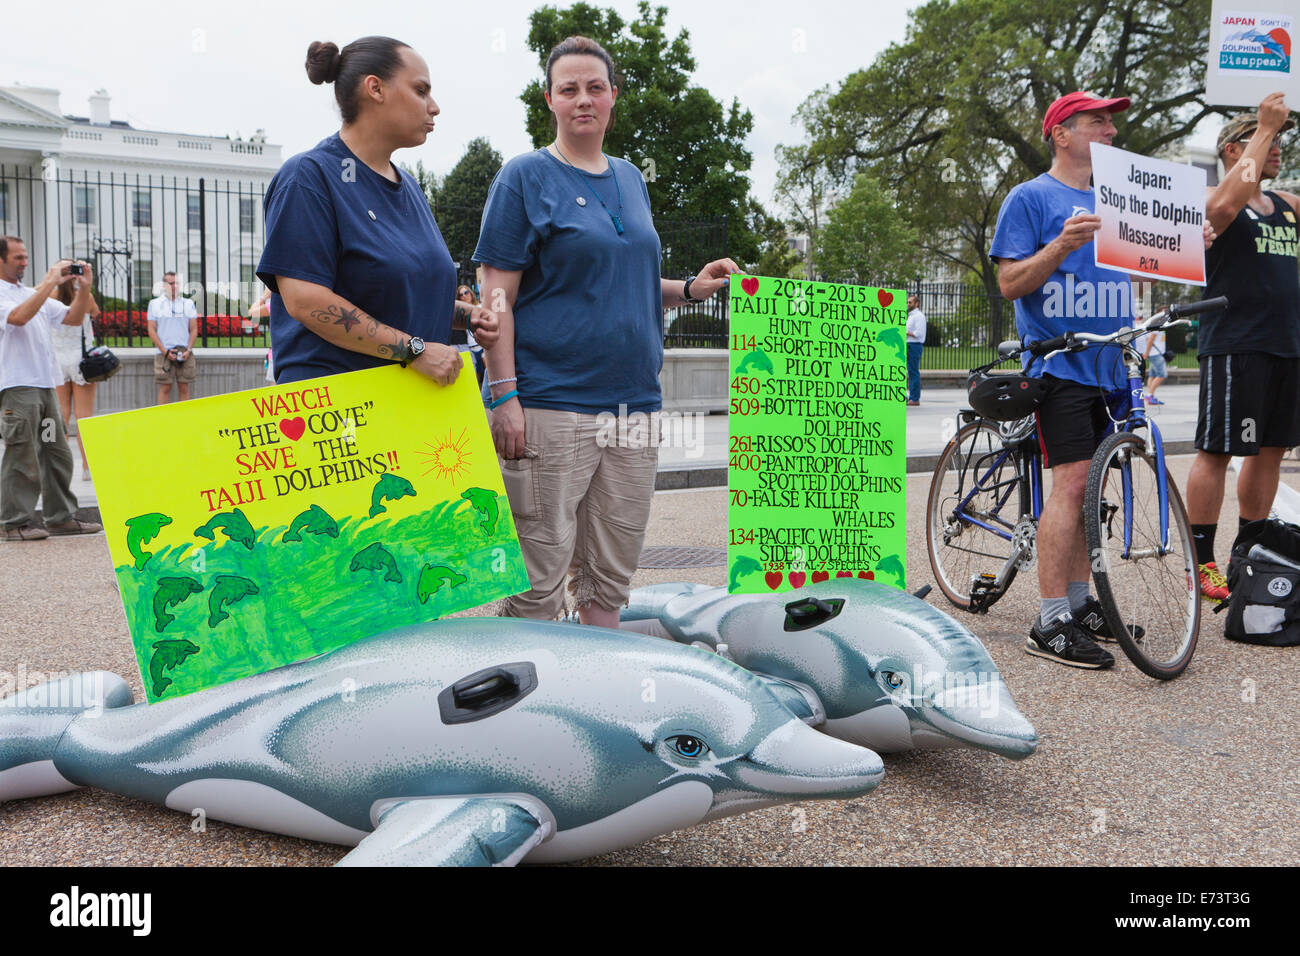 PETA-Mitglieder protestieren vor dem weißen Haus gegen japanische Delphin Fischerei - Washington, DC USA Stockfoto